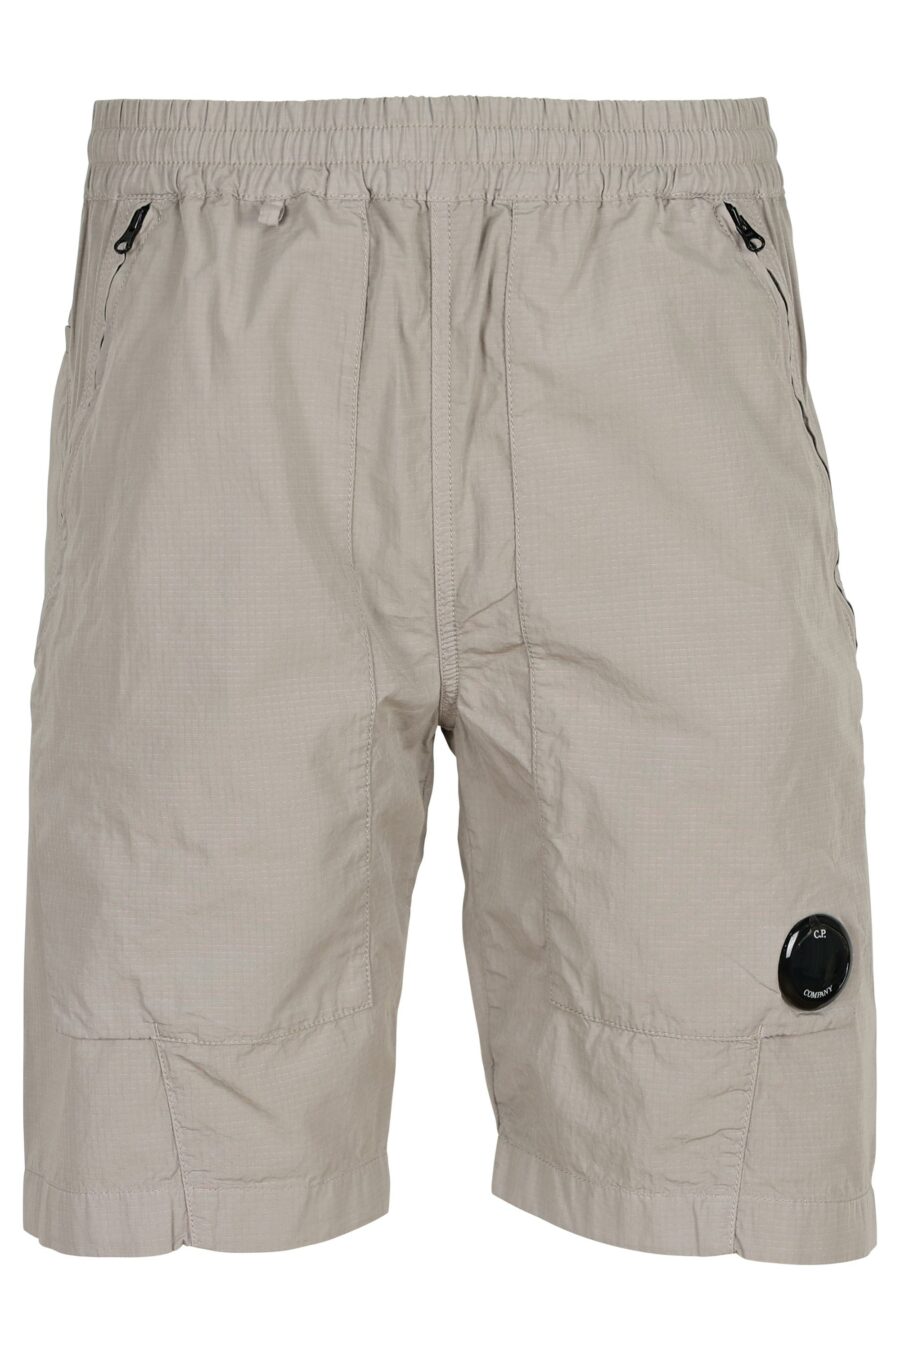 Pantalón corto gris claro con minilogo lente - 7620943690989